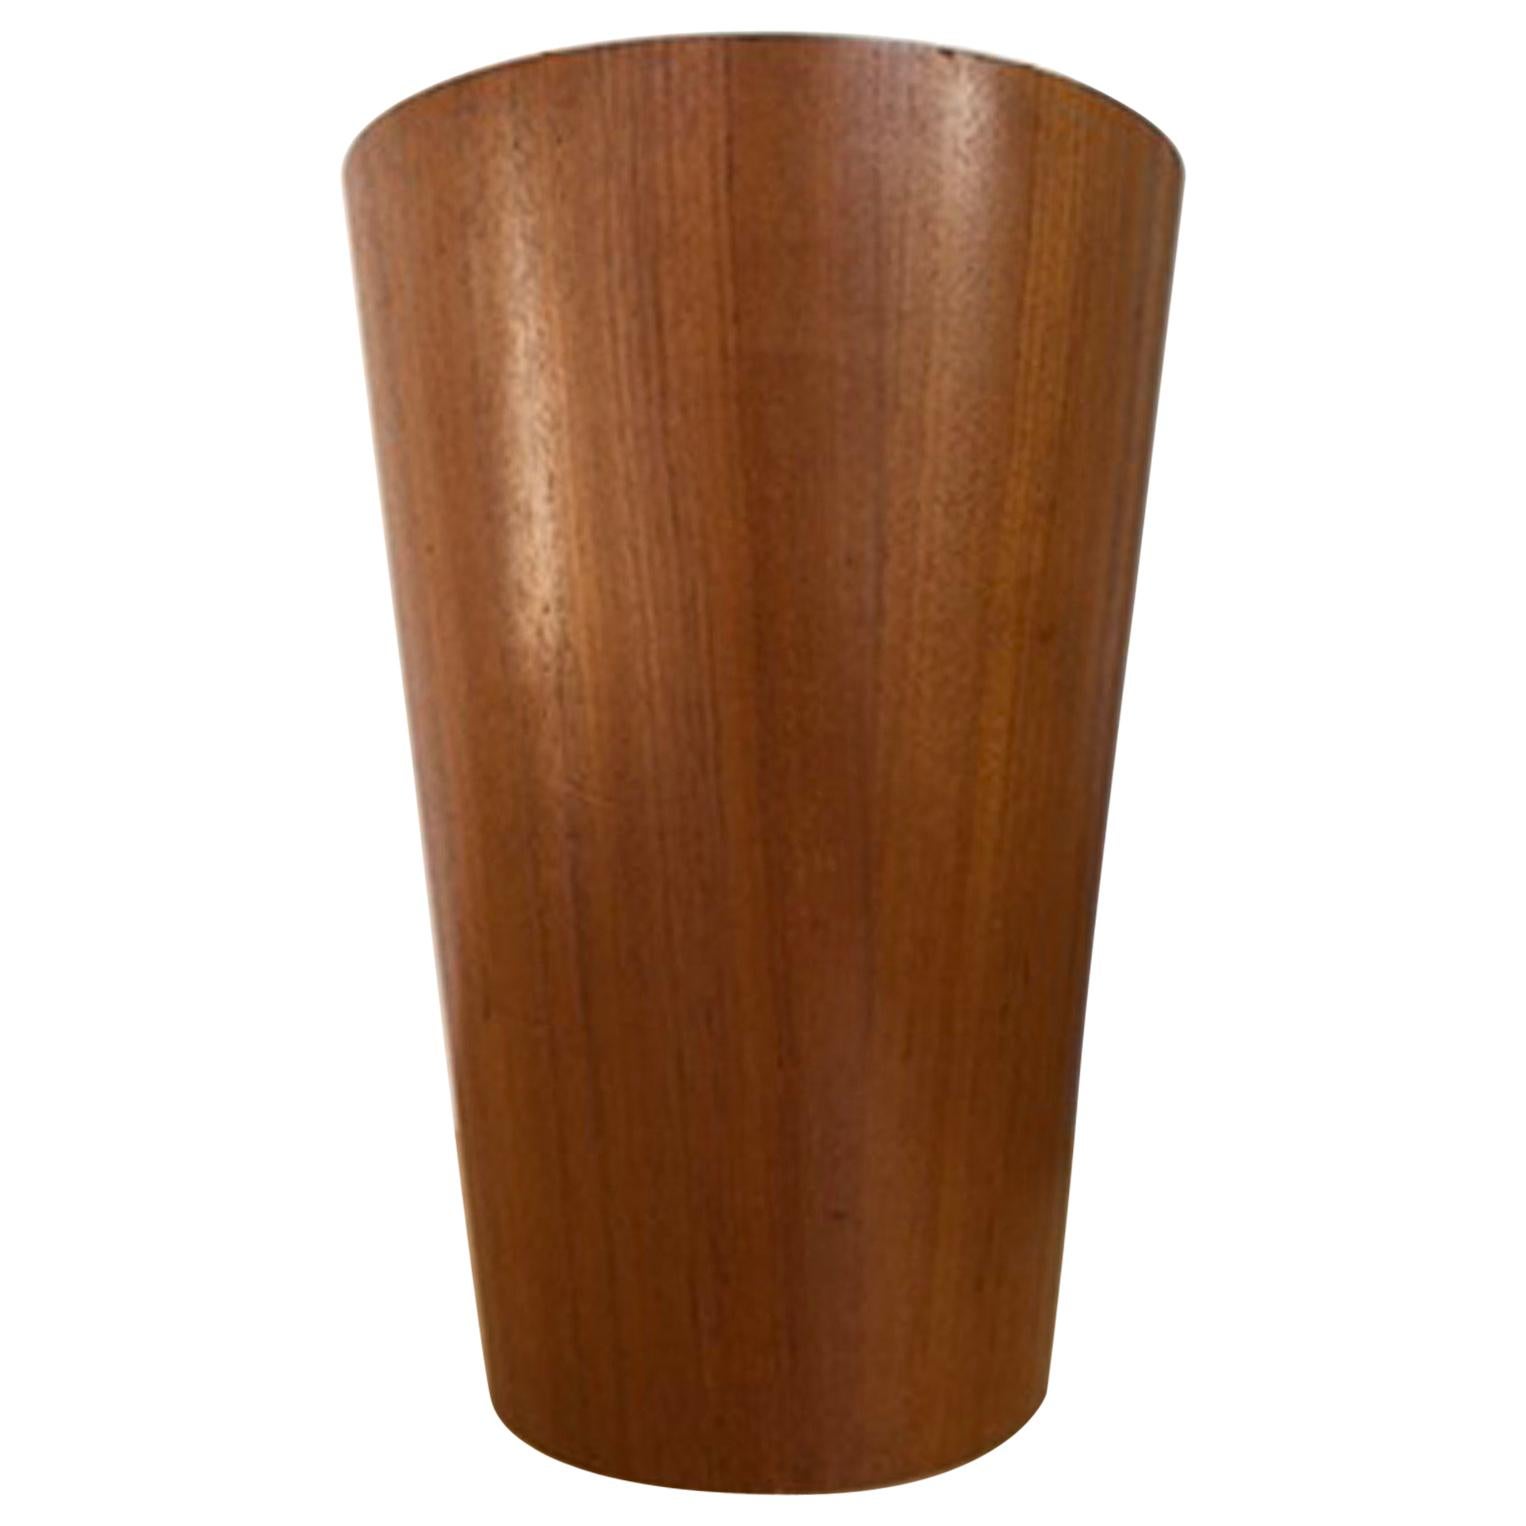 Danish Modern Wooden Wastebasket